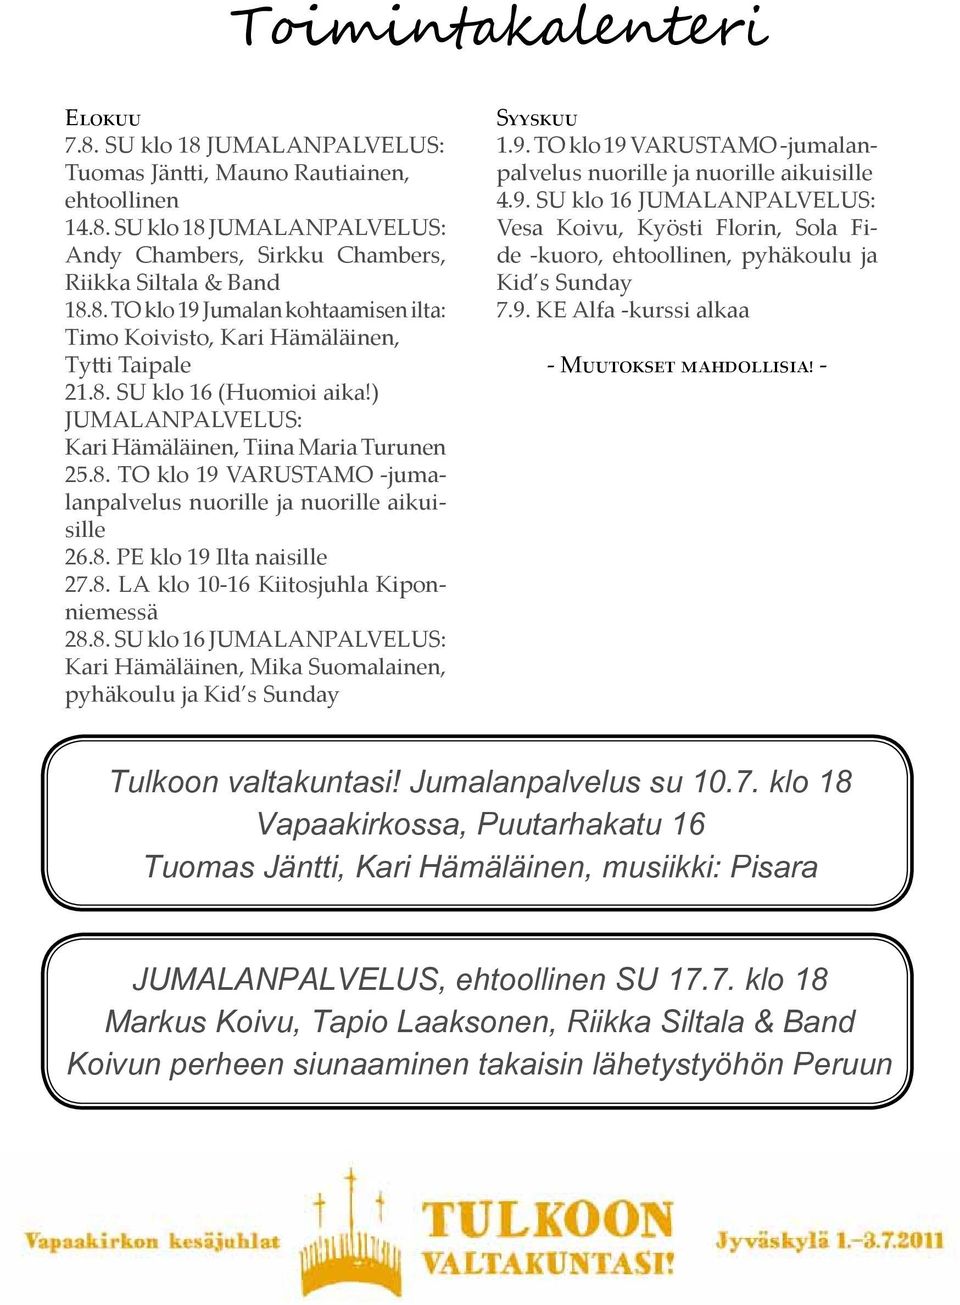 8. SU klo 16 JUMALANPALVELUS: Kari Hämäläinen, Mika Suomalainen, pyhäkoulu ja Kid s Sunday Syyskuu 1.9.